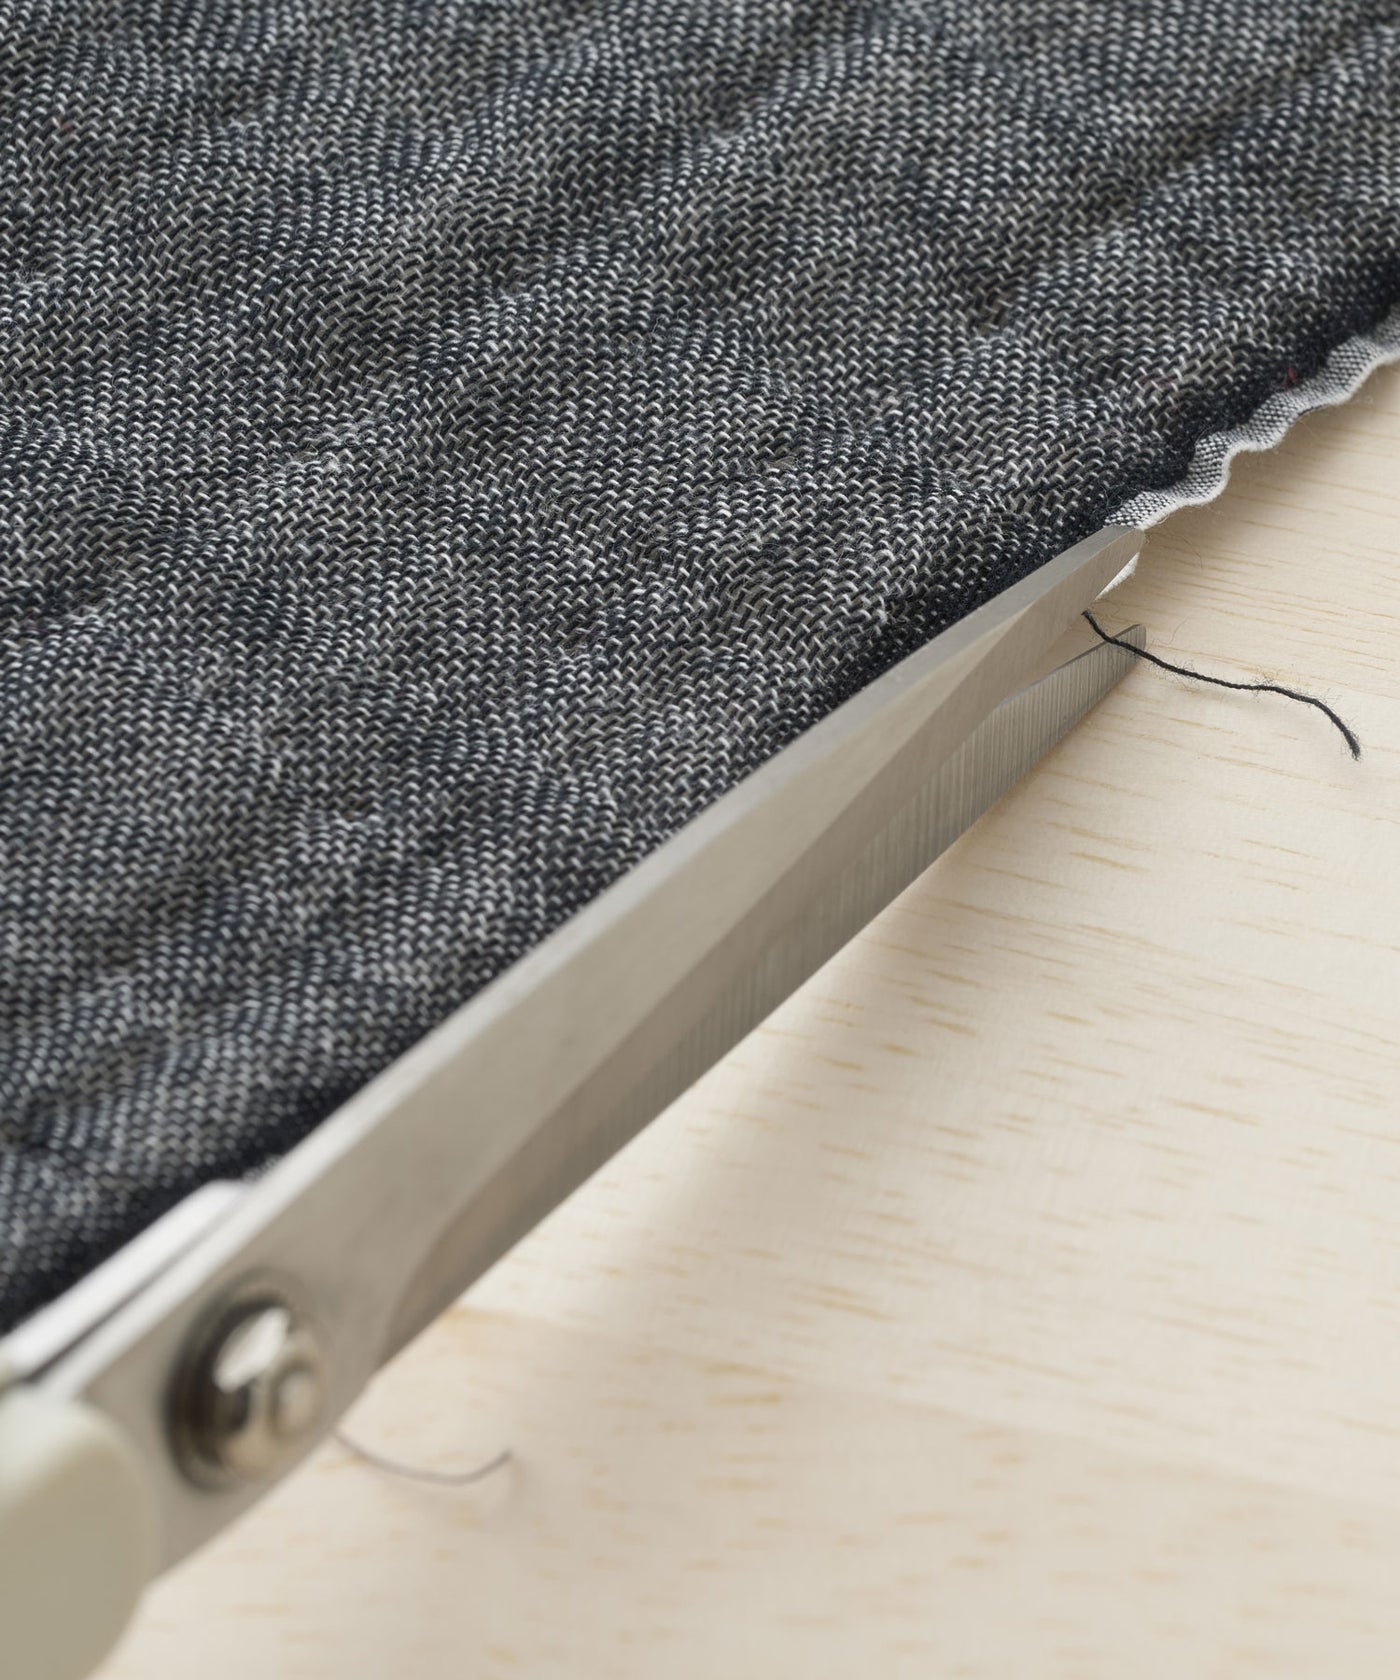 ほつれた糸や遊び糸は無理に引っ張らずハサミでカットしてご使用ください。